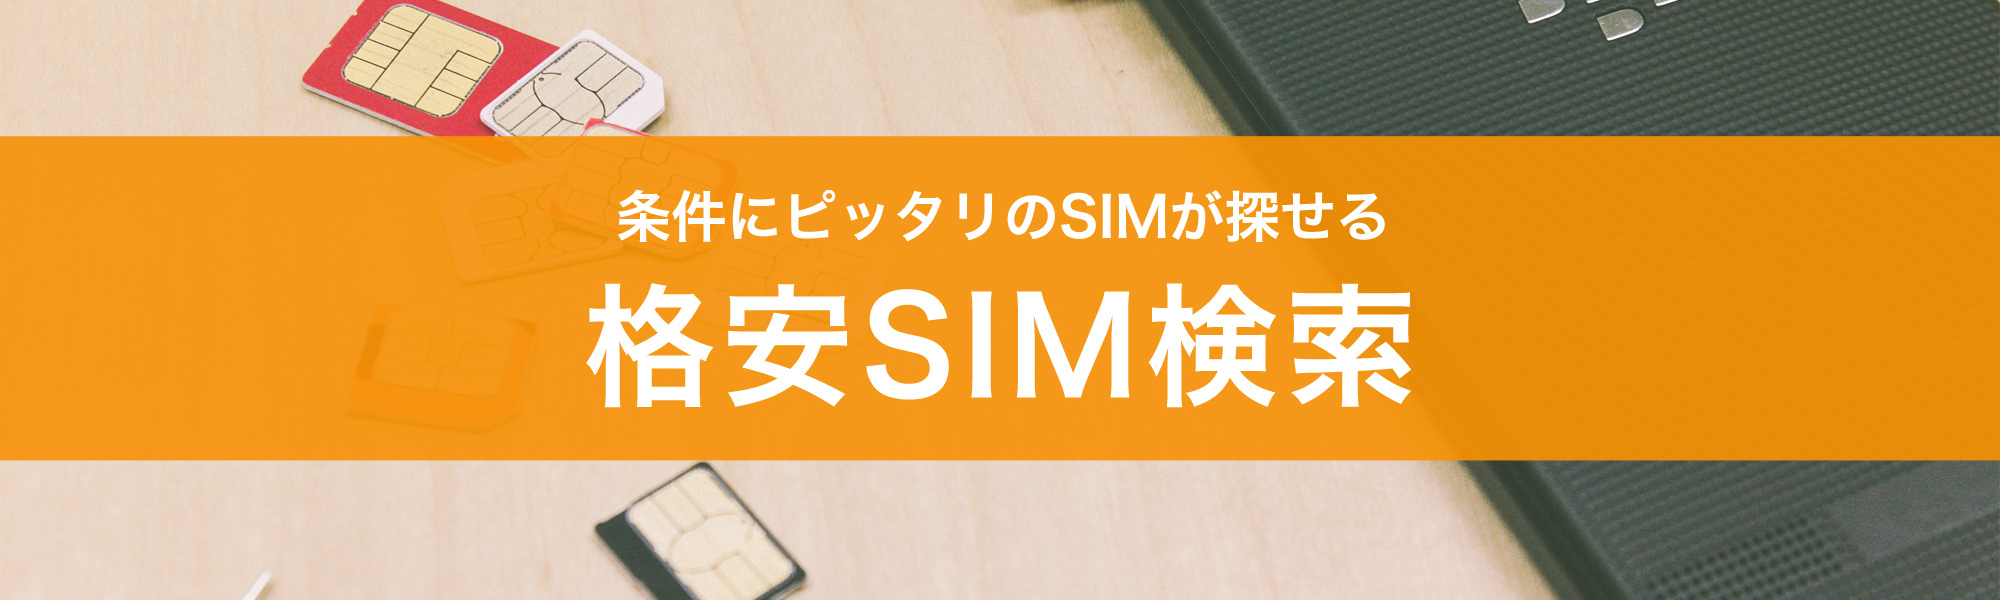 条件にぴったりのSIMが探せる 格安SIM検索